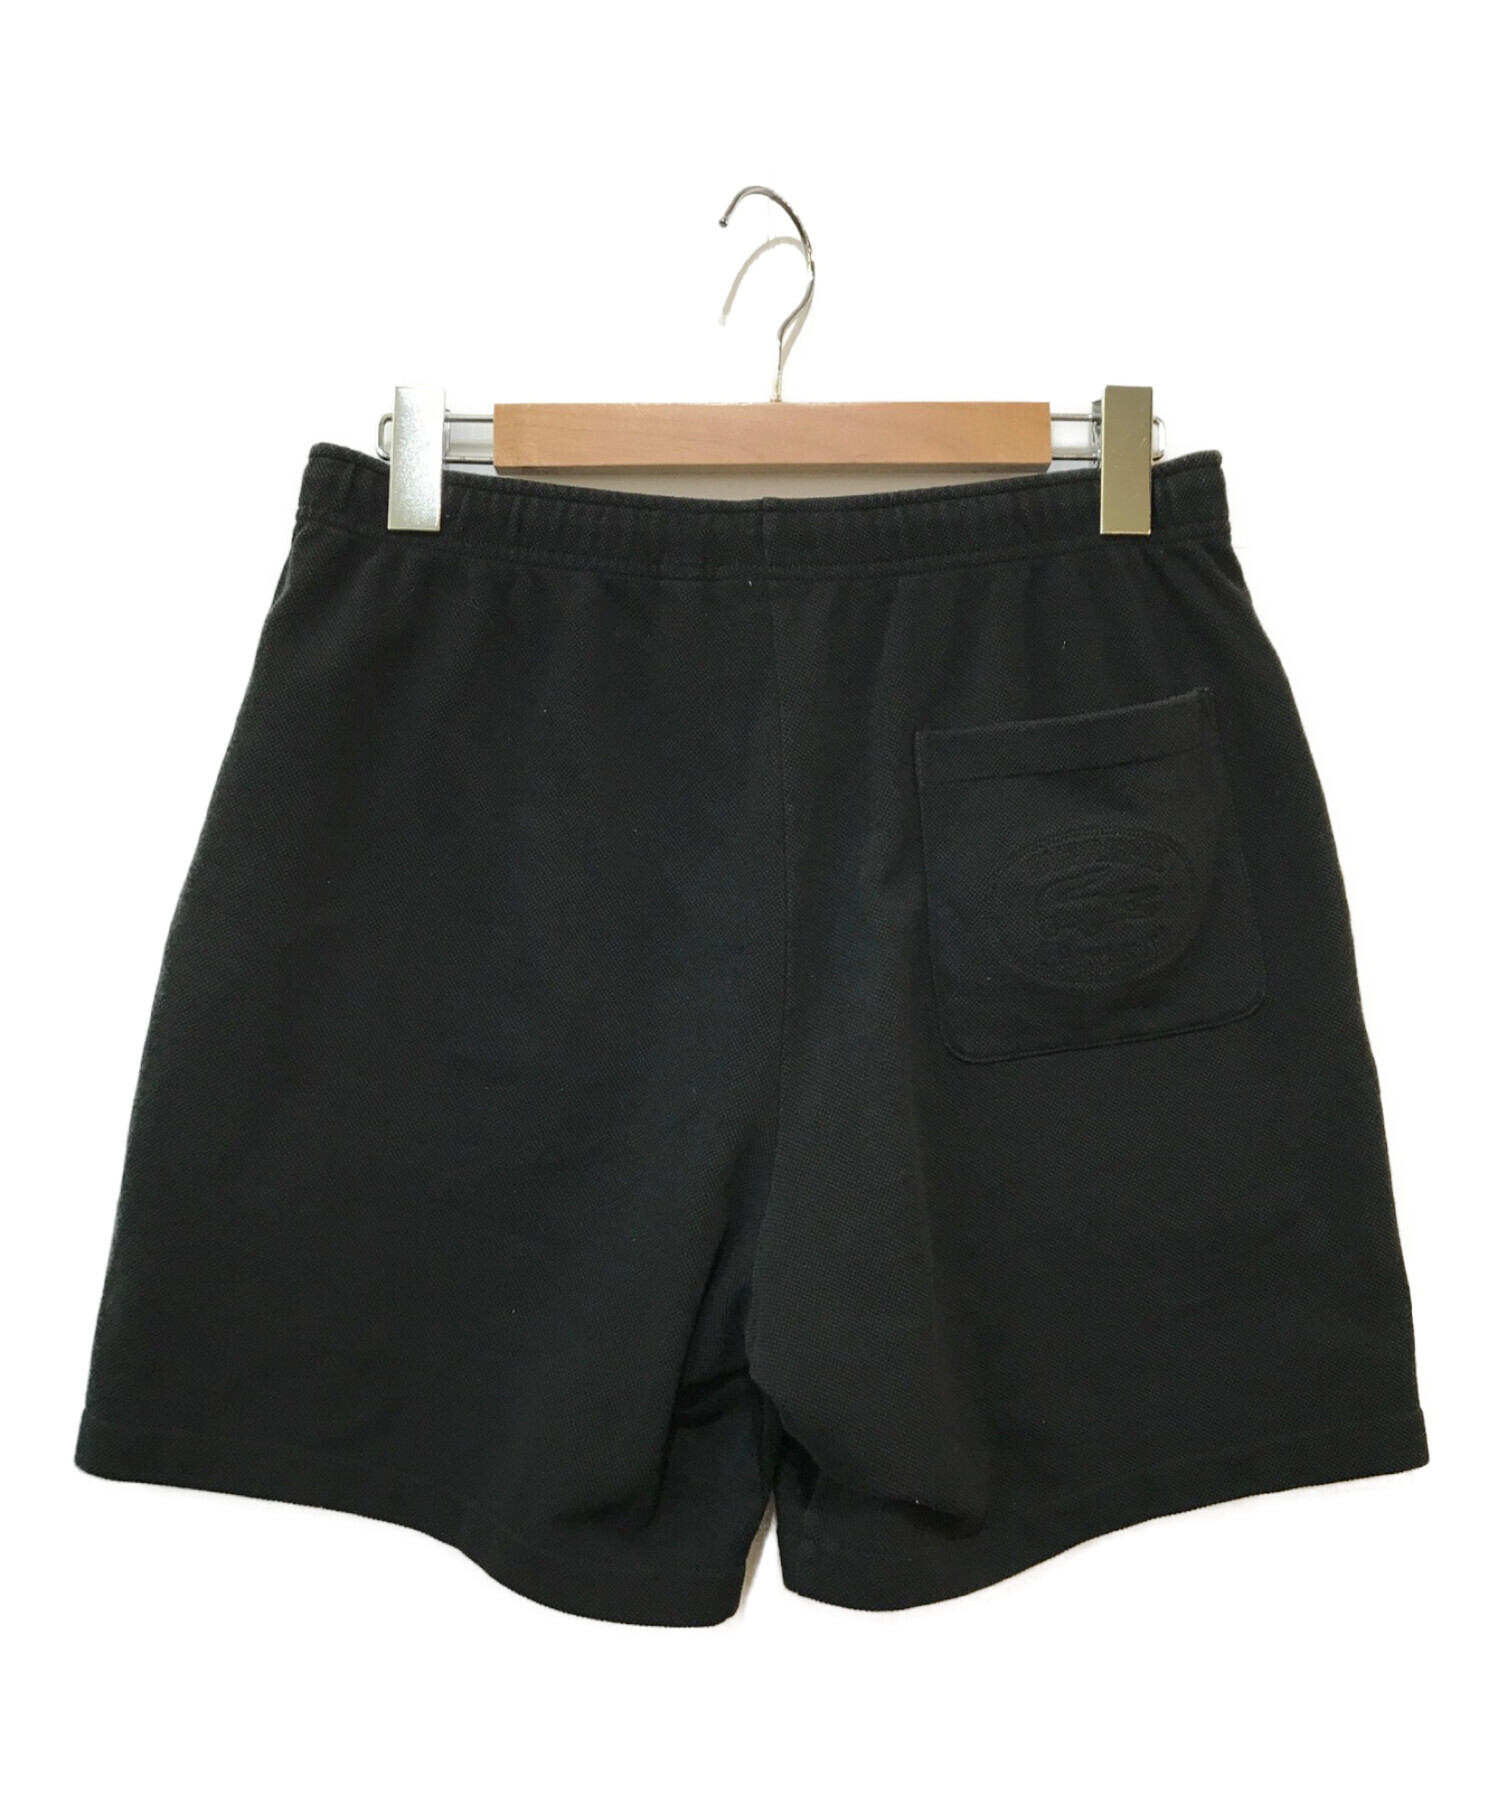 Supreme×LACOSTE (シュプリーム×ラコステ) Pique Shorts ブラック サイズ:S